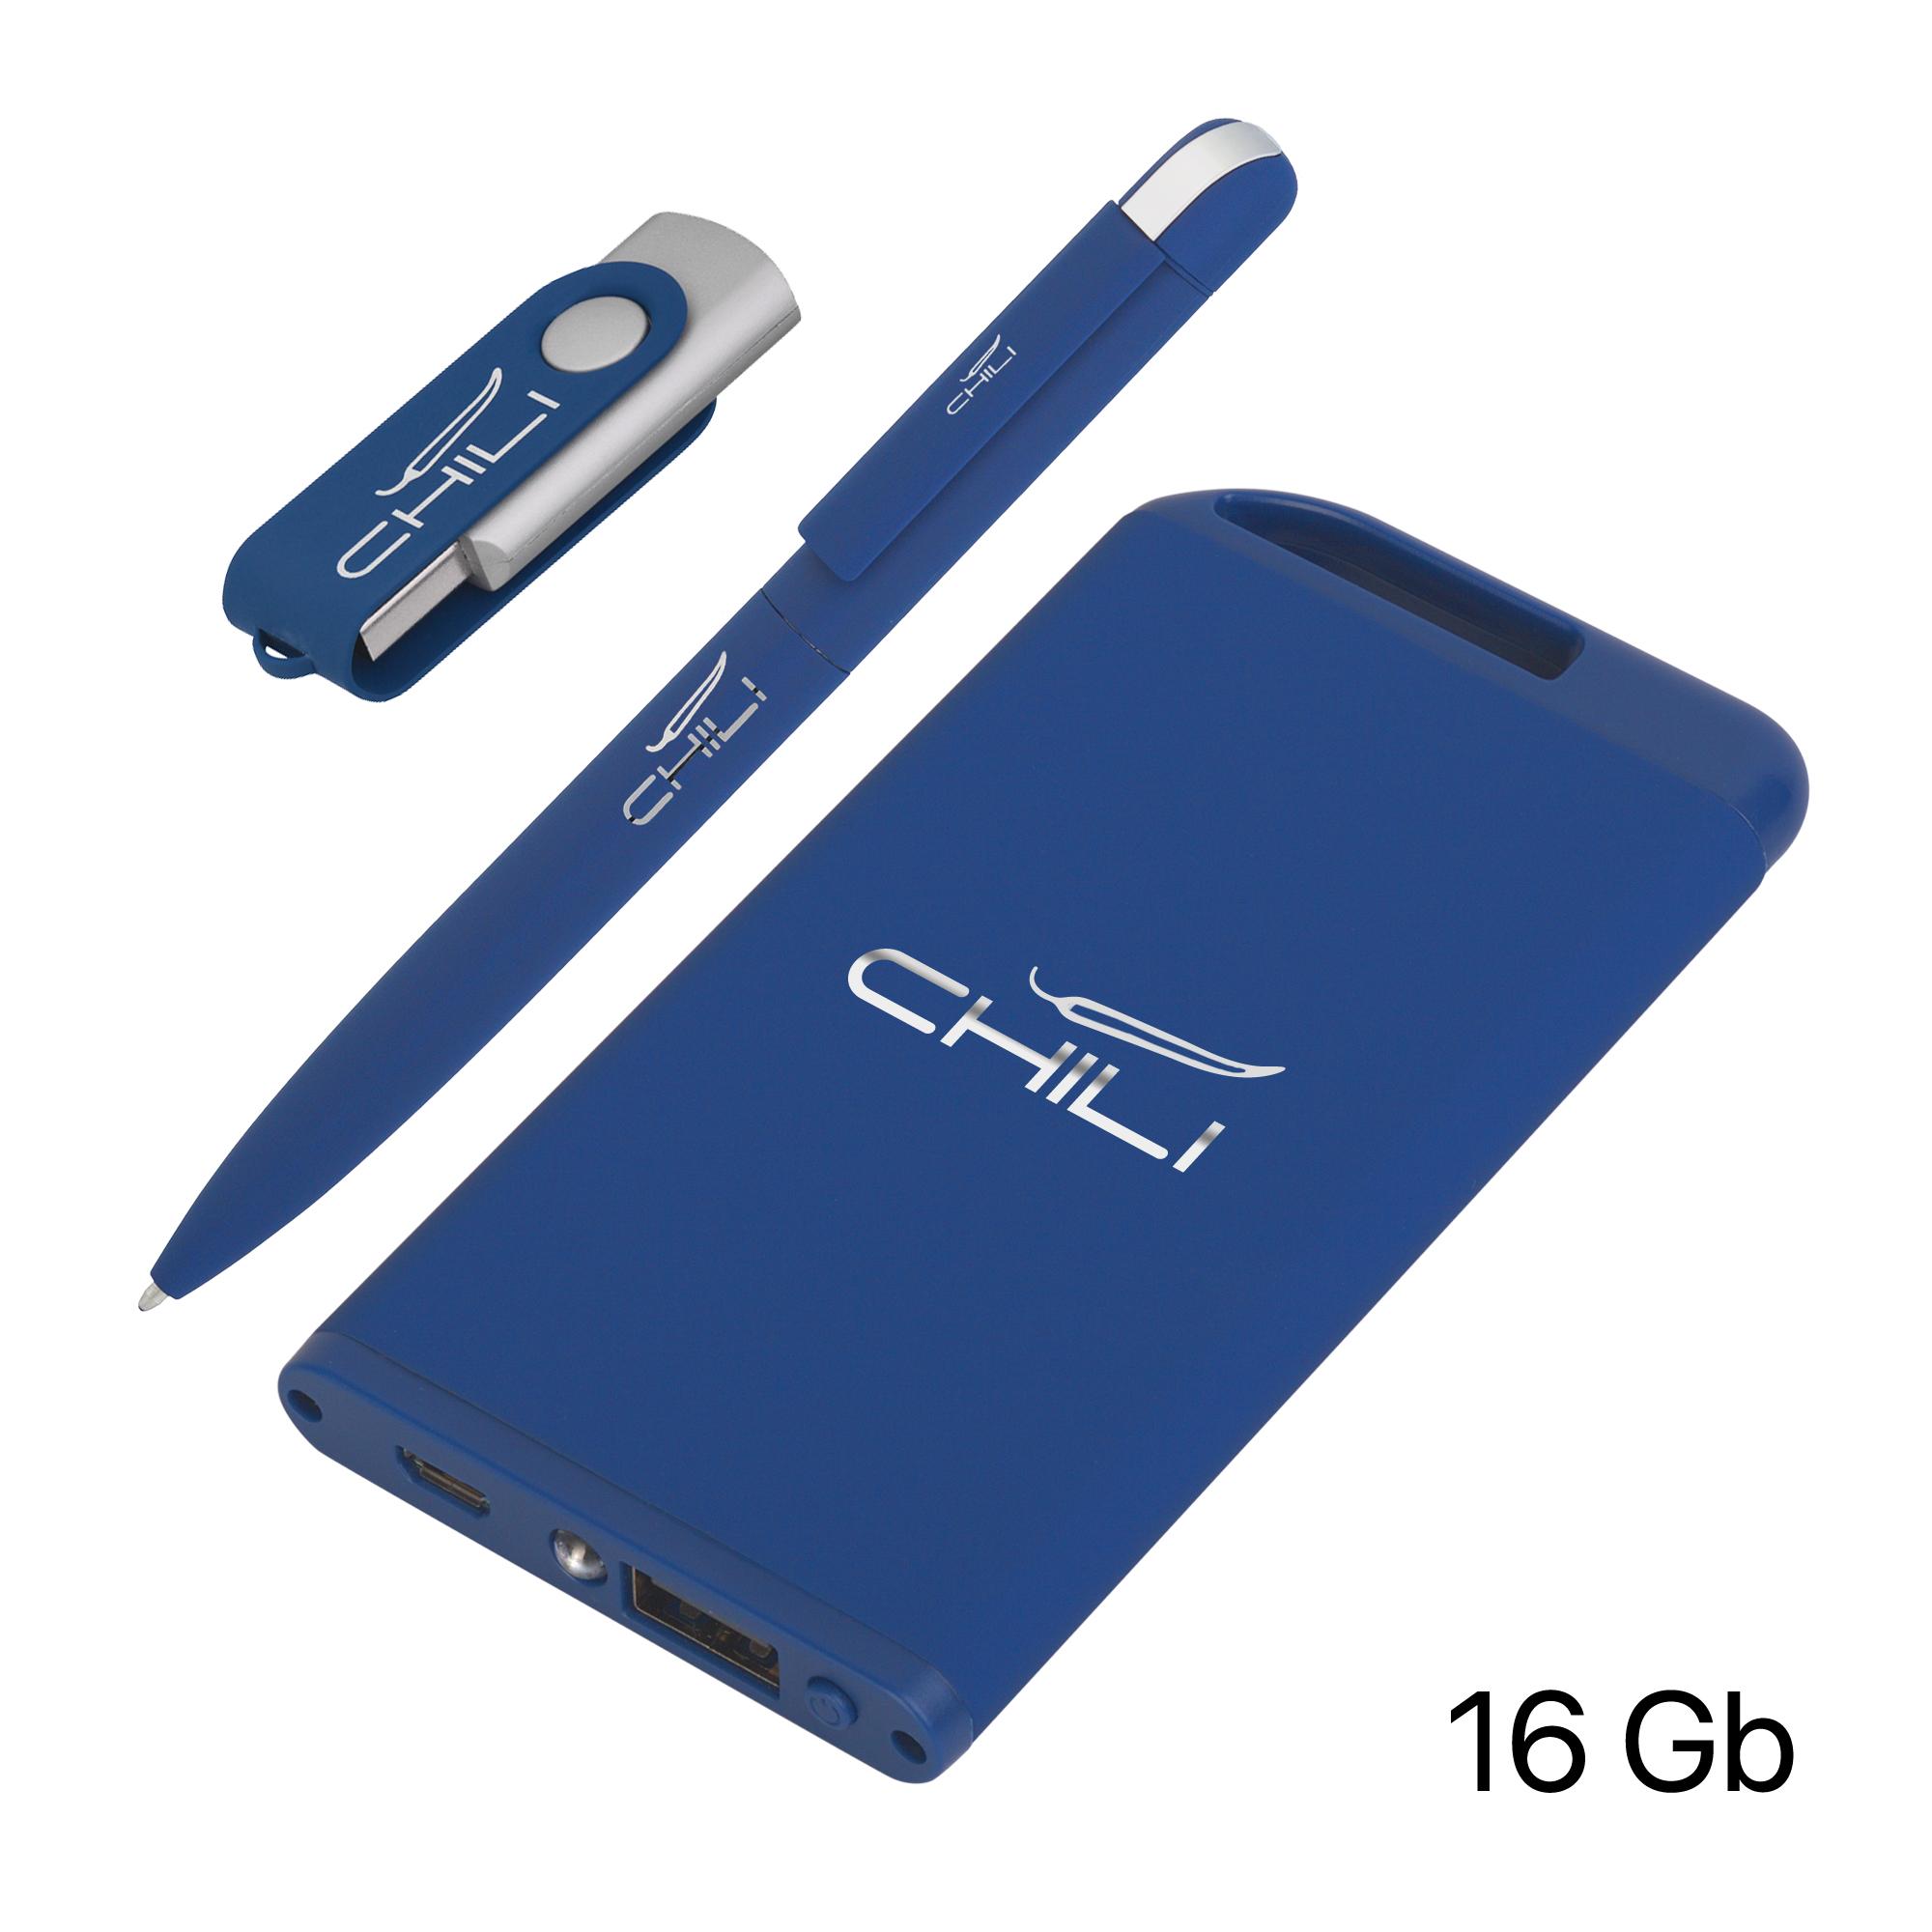 Набор ручка + флеш-карта 16Гб + зарядное устройство 4000 mAh в футляре покрытие soft touch, цвет темно-синий, фото 1